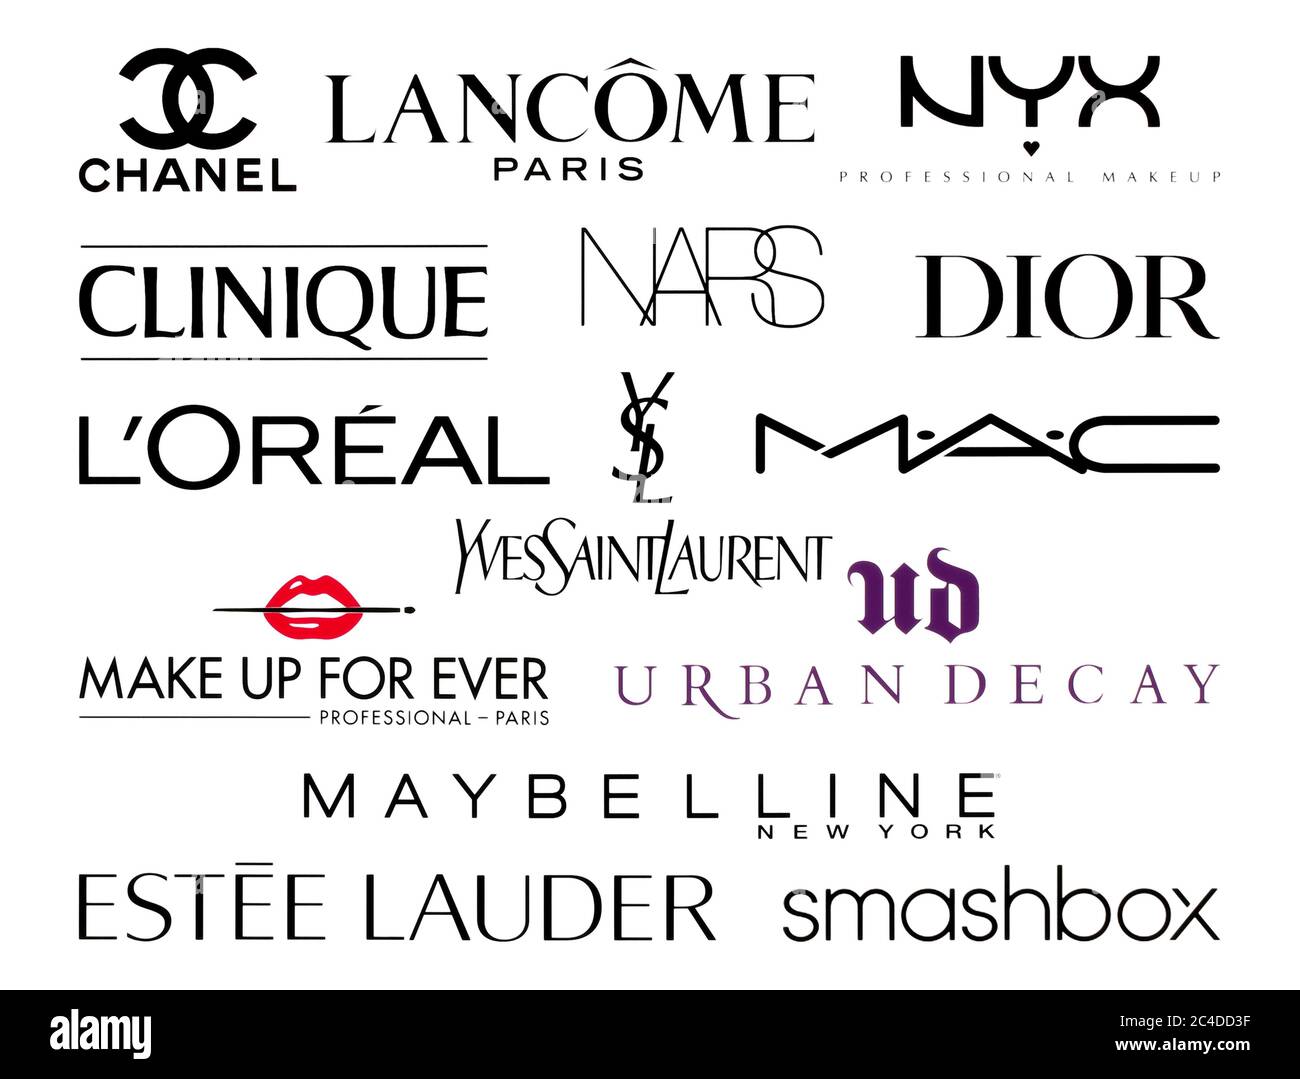 Kiev, Ukraine - 23 février 2020: Collection de logos des plus grandes entreprises mondiales de mode et de cosmétiques, telles que: Channel, Lancome, NARS, Dior, Lorea Banque D'Images